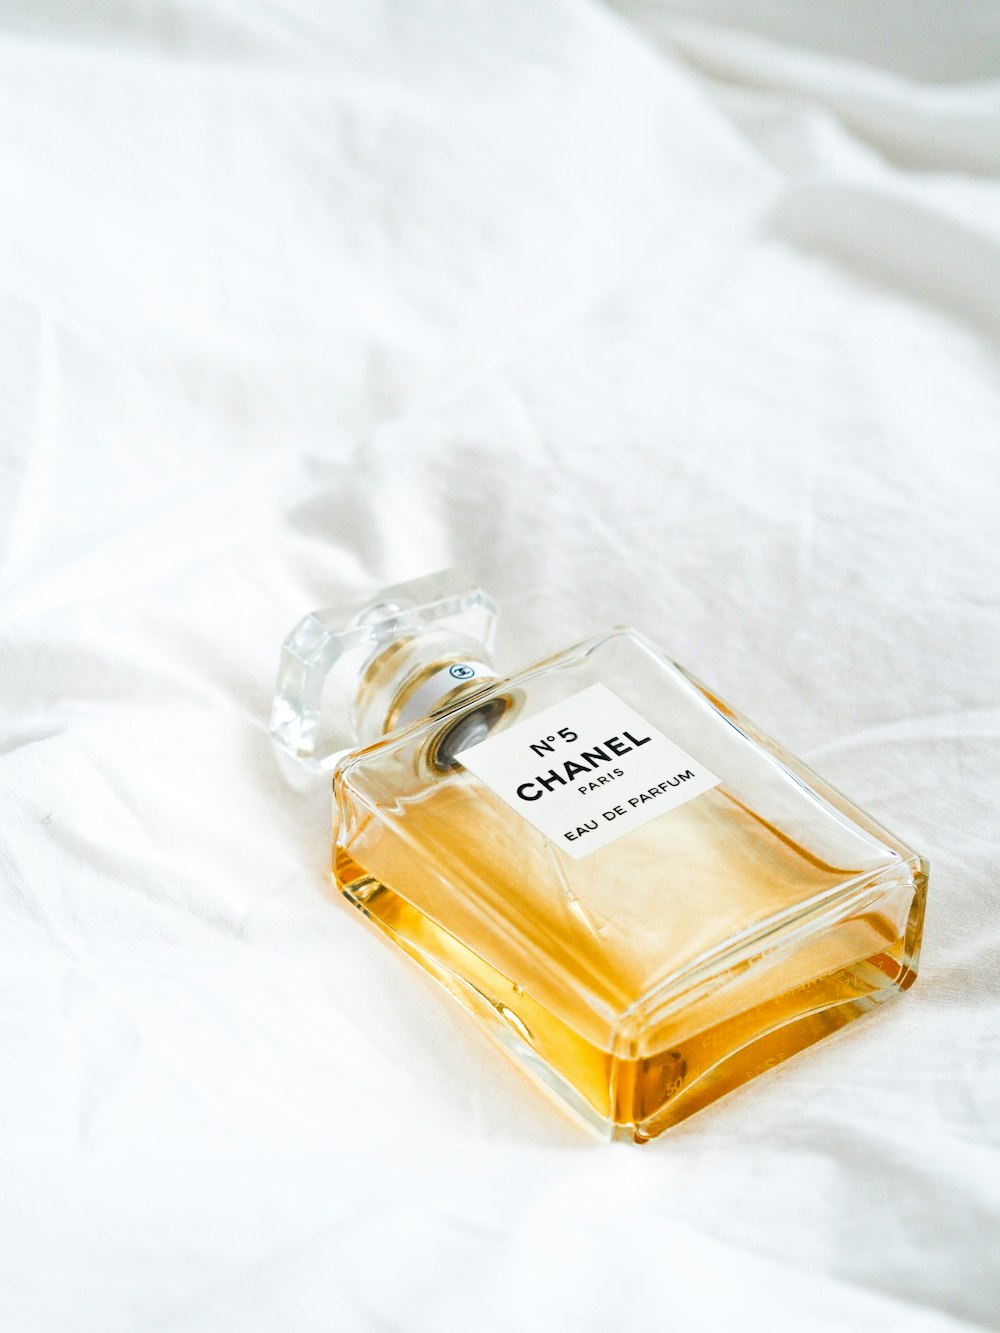 N5 Chanel Bottle On White Surface Photo Free Perfume Image On Unsplash